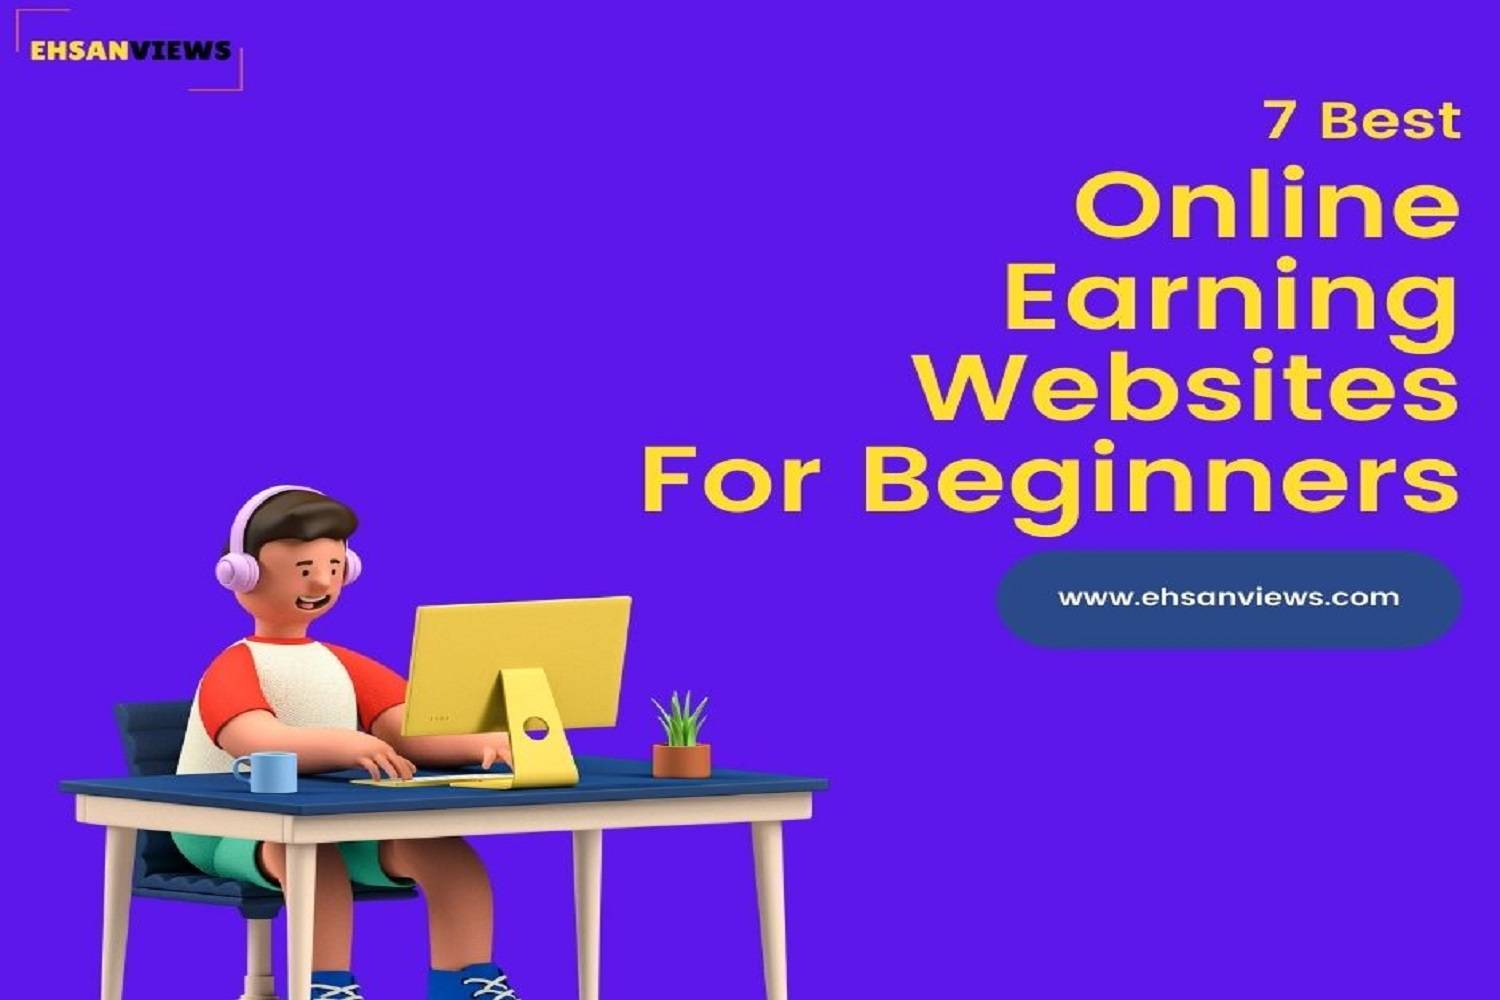 7 Best Online Earning Websites For Beginners | Abdul Ehsan | Entrepreneur and Digital Marketing Consultant in Sri Lanka